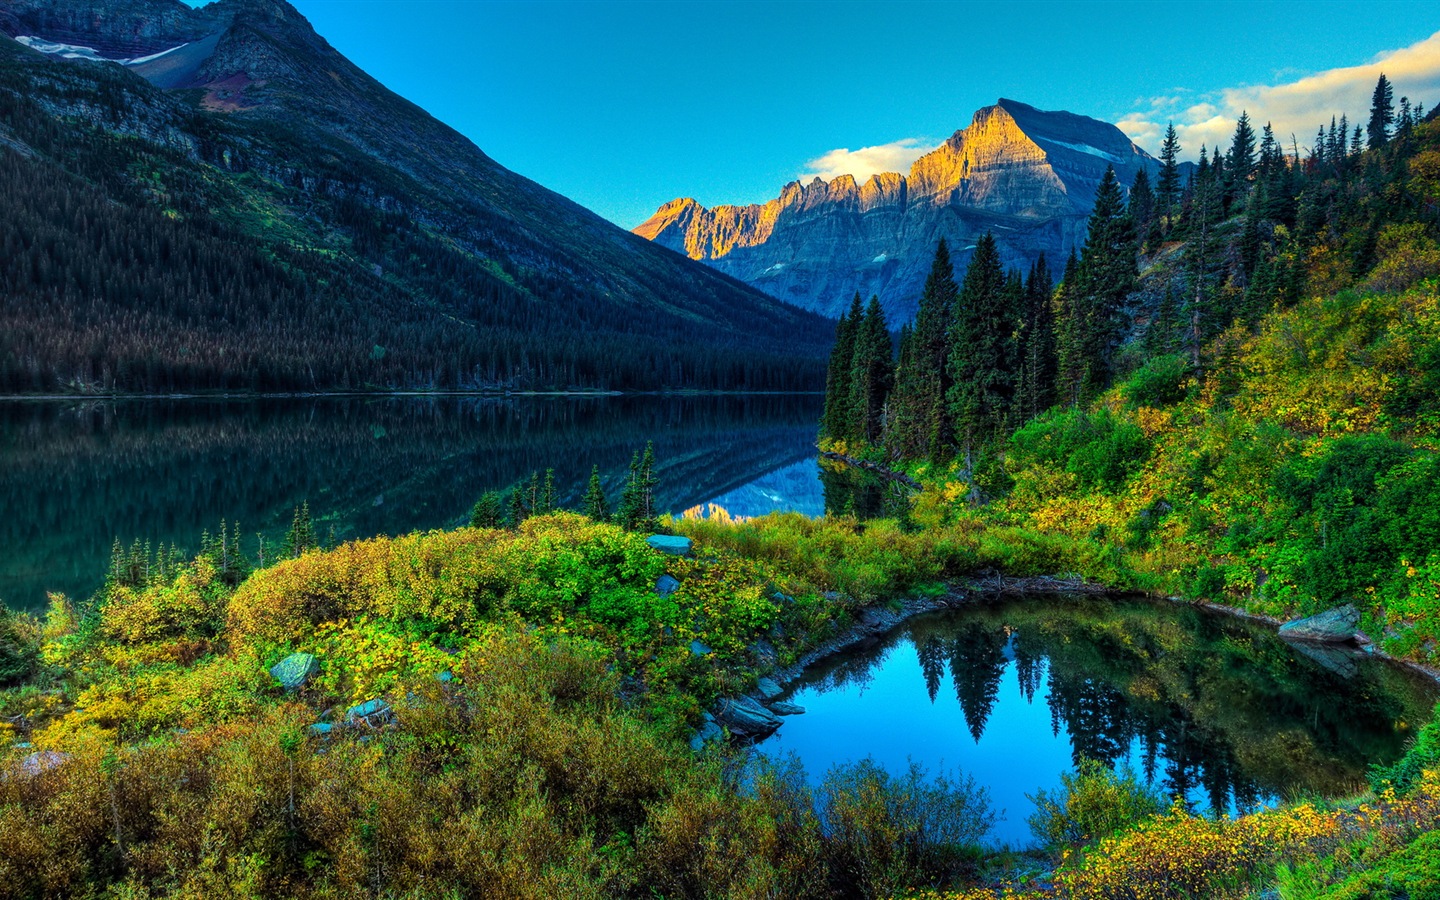 Fondos de pantalla HD paisajes naturales de gran belleza #1 - 1440x900